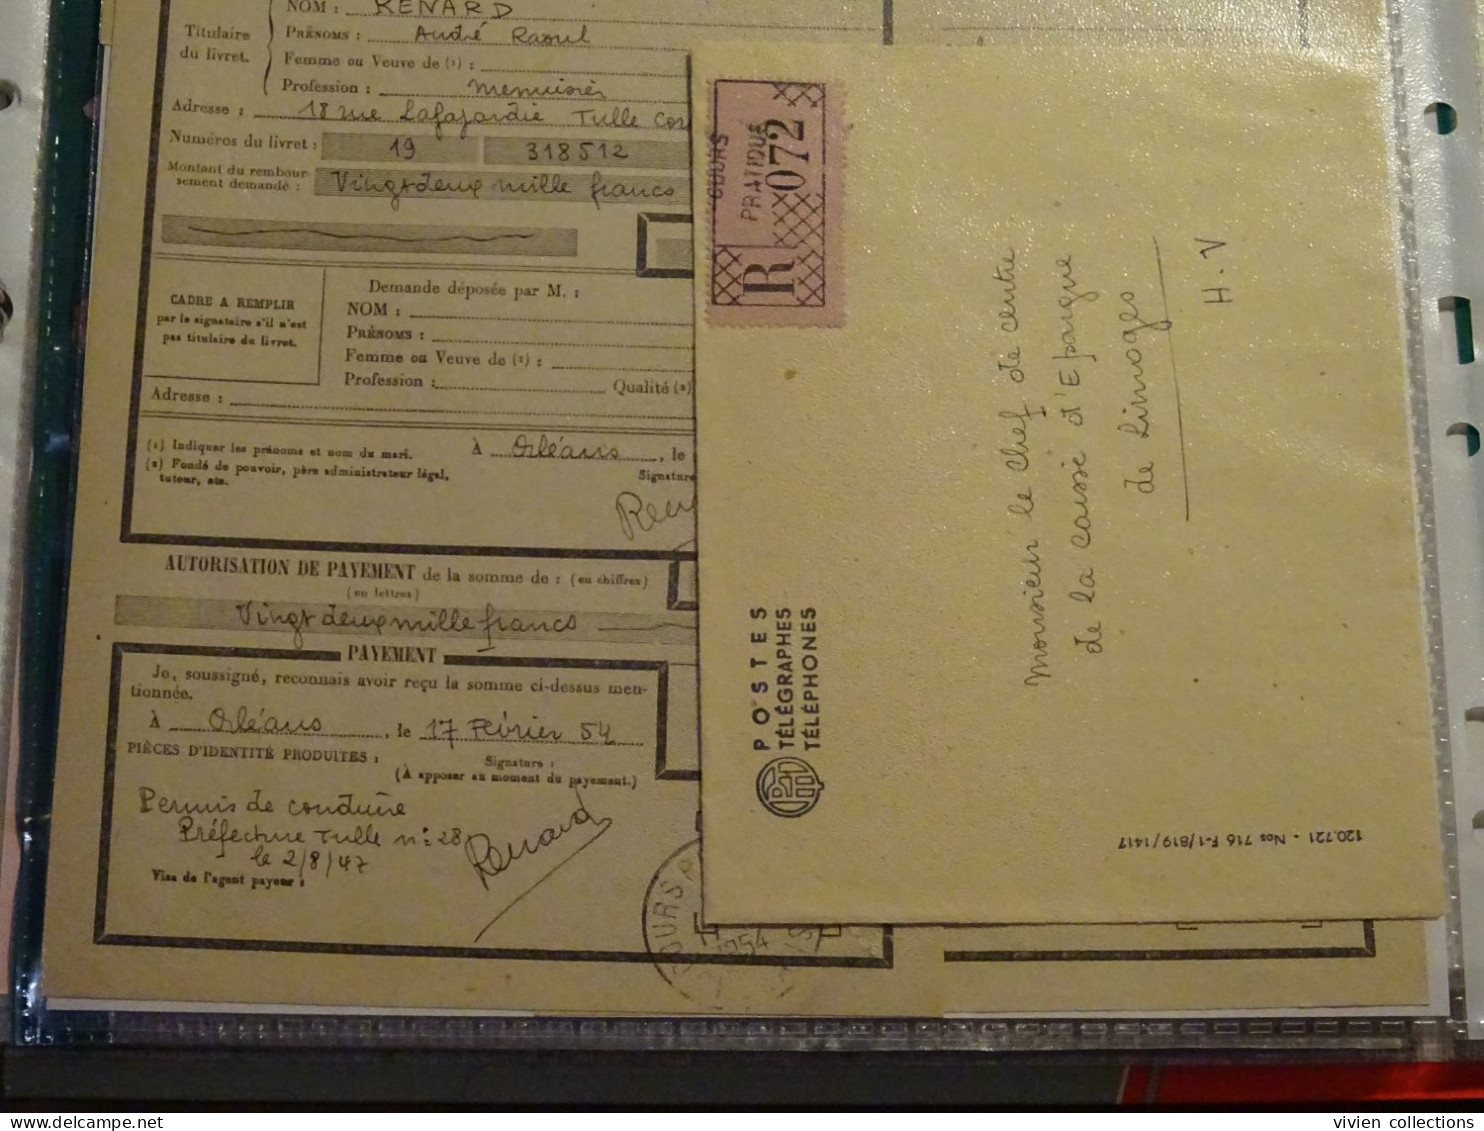 France Cours Pratique D'instruction Orléans 1954 Télégramme Remboursement A Vue Partiel CNE M. Renard Menuisier à Tulle - Corsi Di Istruzione